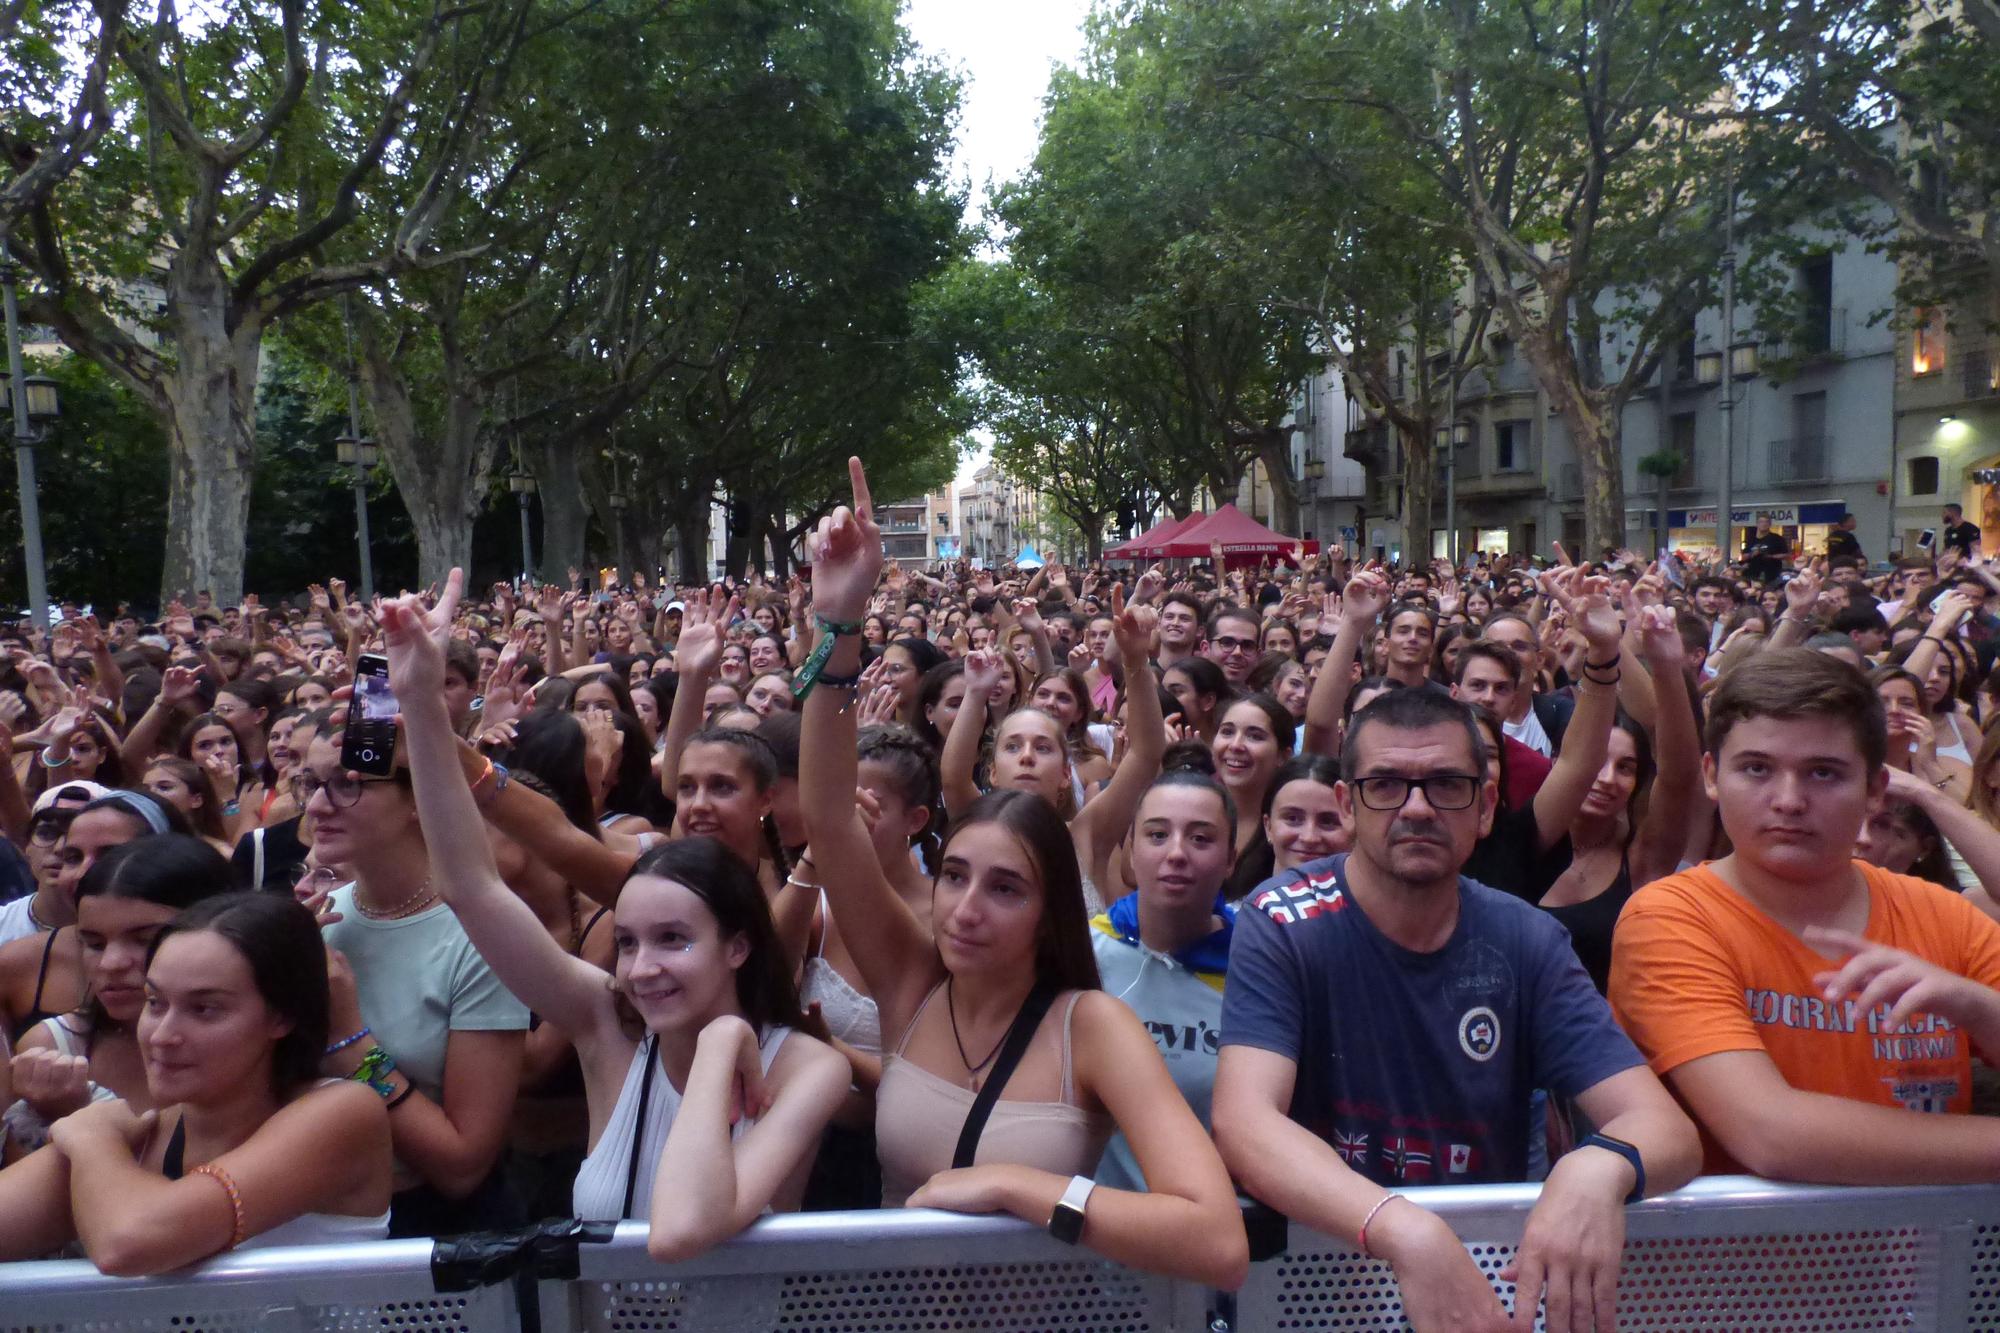 Figueres es desborda amb la tercera nit del festival acústica